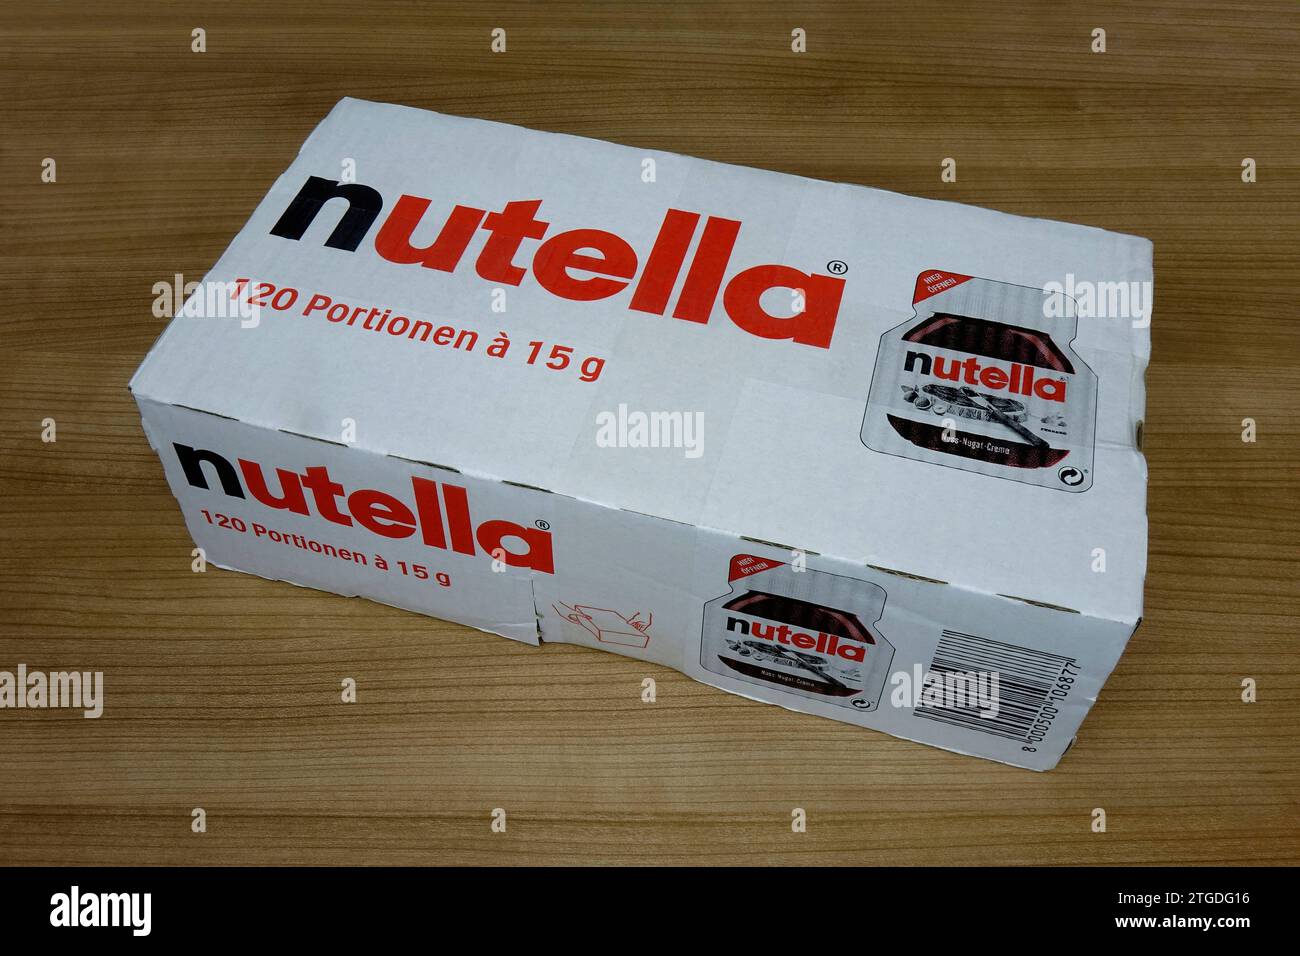 Karton mit Nutella Karton mit Nutella, 18.12.2023, Borkwalde, Brandenburg, In einem Karton von Nutella befinden sich 120 Portionen. *** Carton of Nutella Carton of Nutella, 18 12 2023, Borkwalde, Brandenburg, There are 120 portions in a carton of Nutella Stock Photo